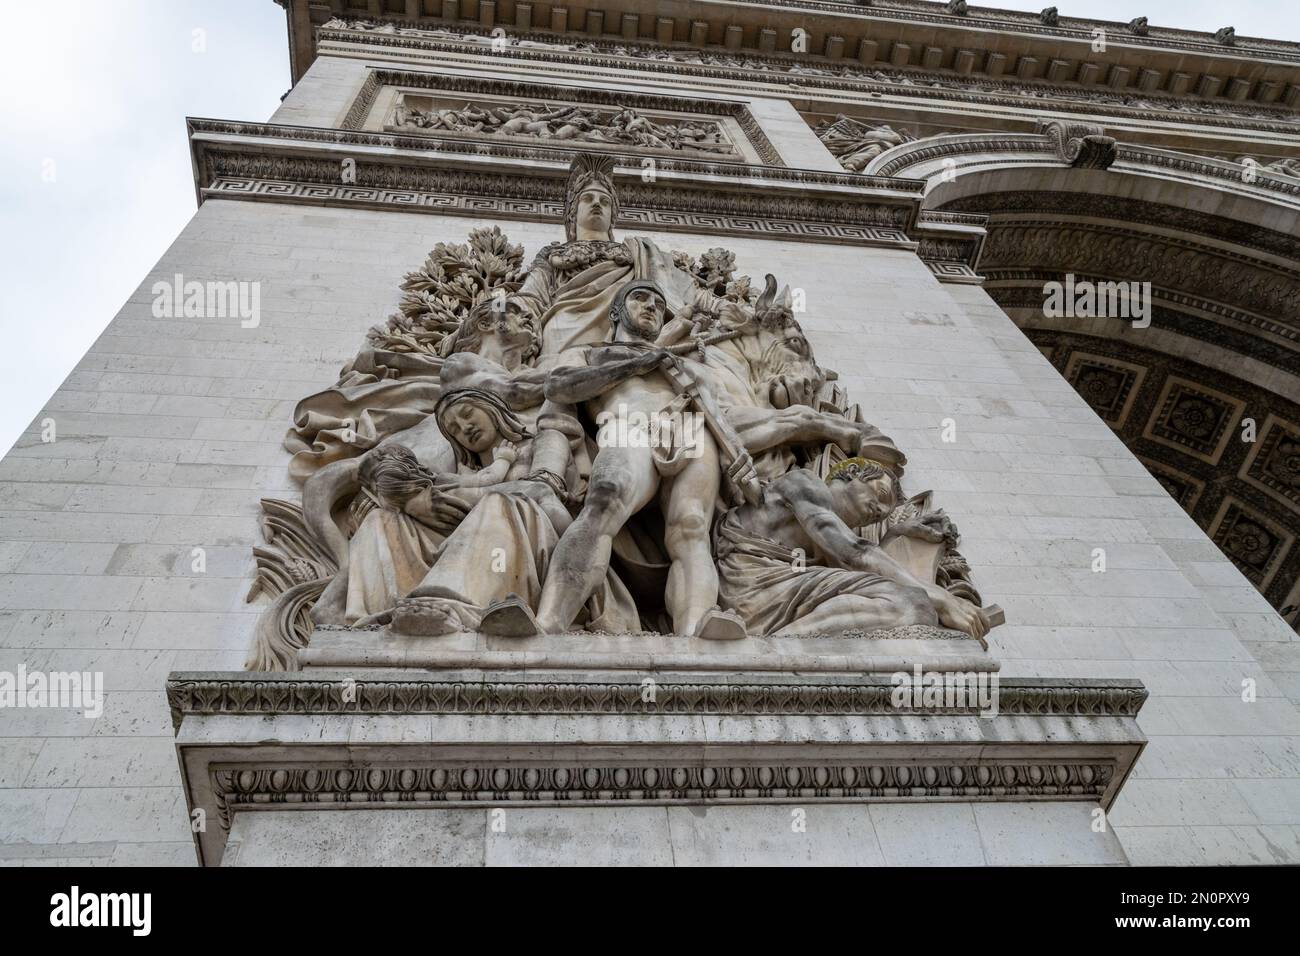 Paris Arche de Triomphe, place de Étoile. Soldiers monuments. Big stone monuments of the world. Pl. Charles de Gaulle, 75008 Paris, France. Stock Photo